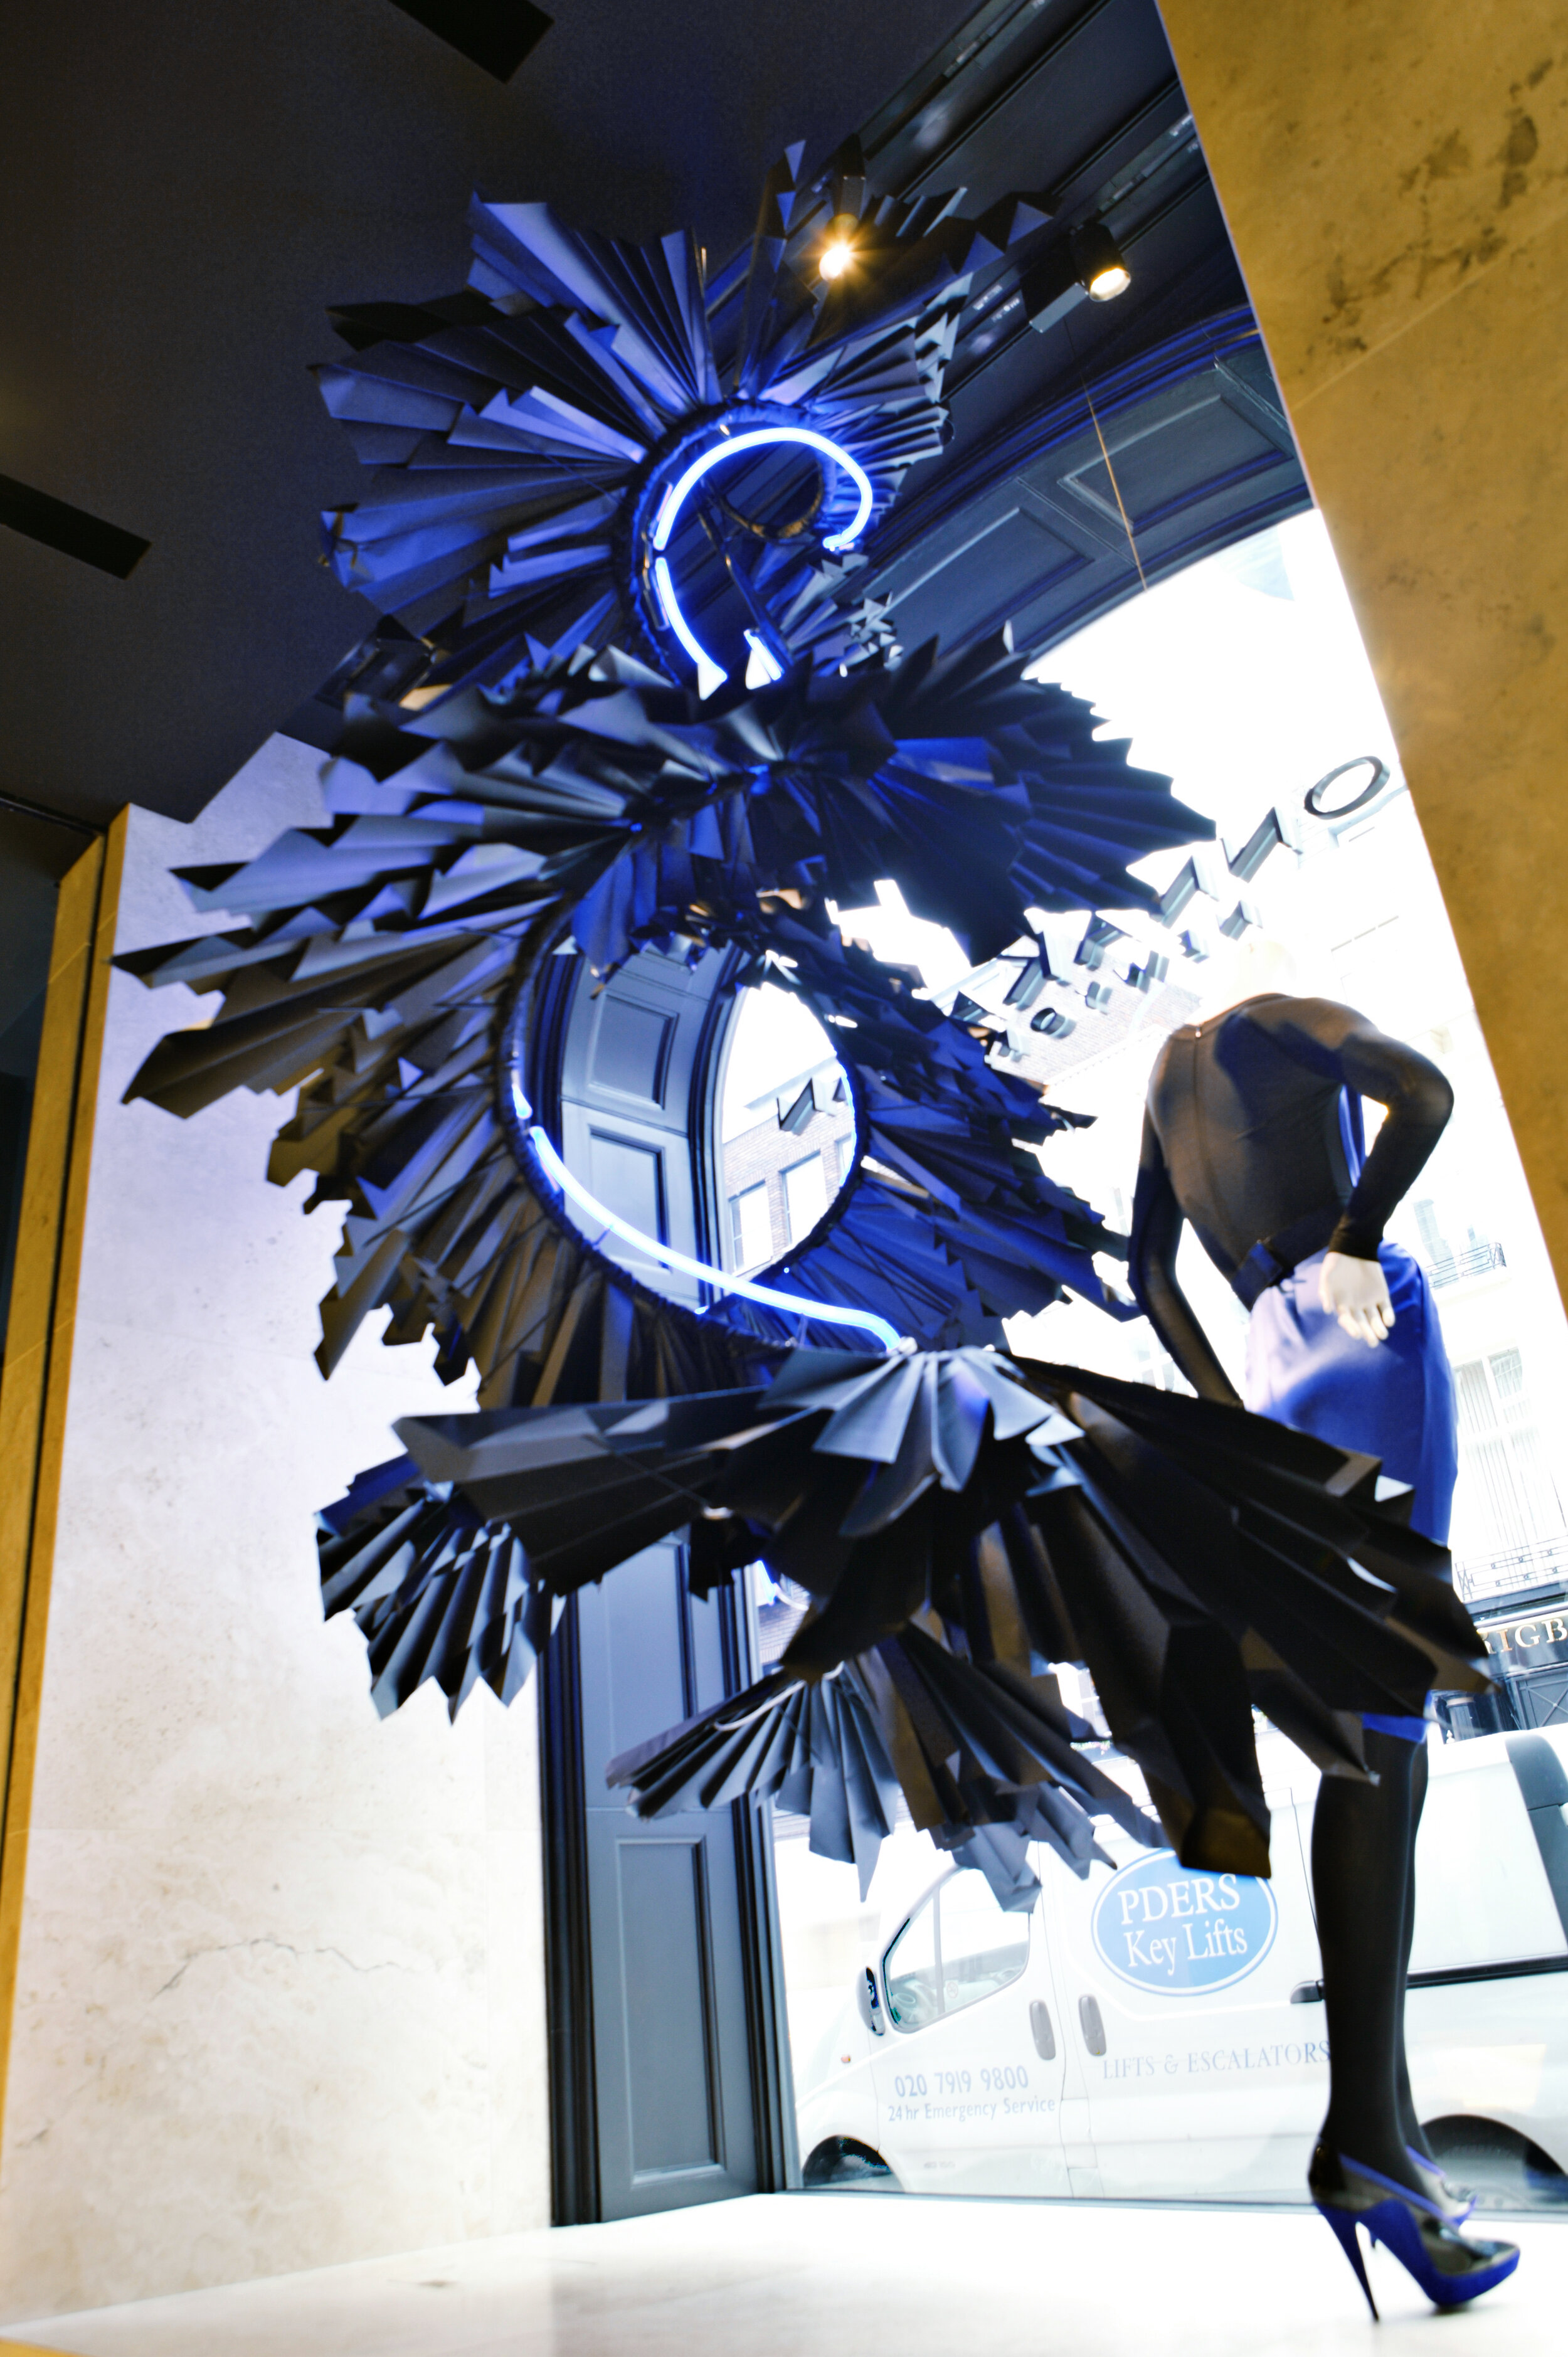 donna-karen-paper-dress-window-display-zoe-bradley-paper-art-7.jpg